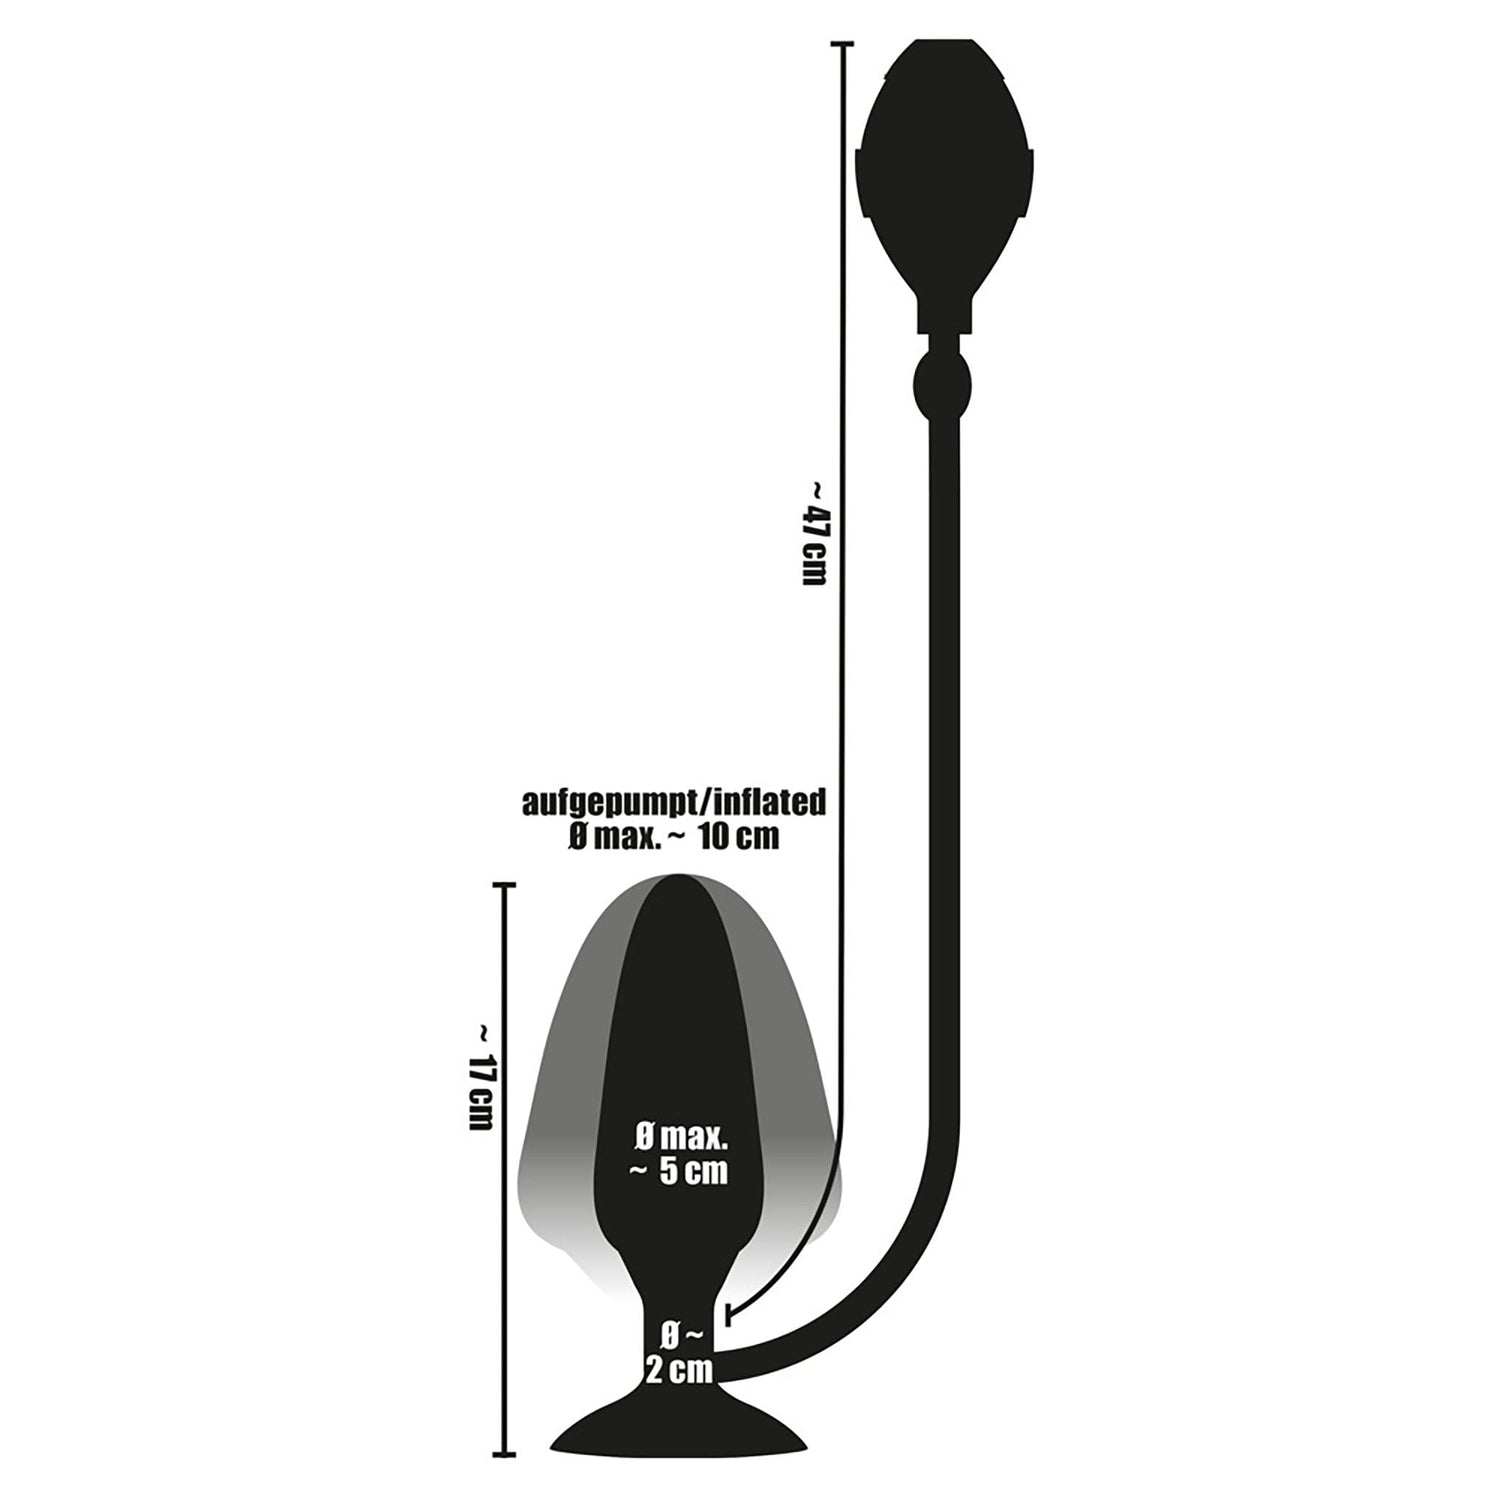 True Black Inflatable Butt Plug, aufblasbarer Analplug in schwarz mit Ballpumpe aufgepumpt